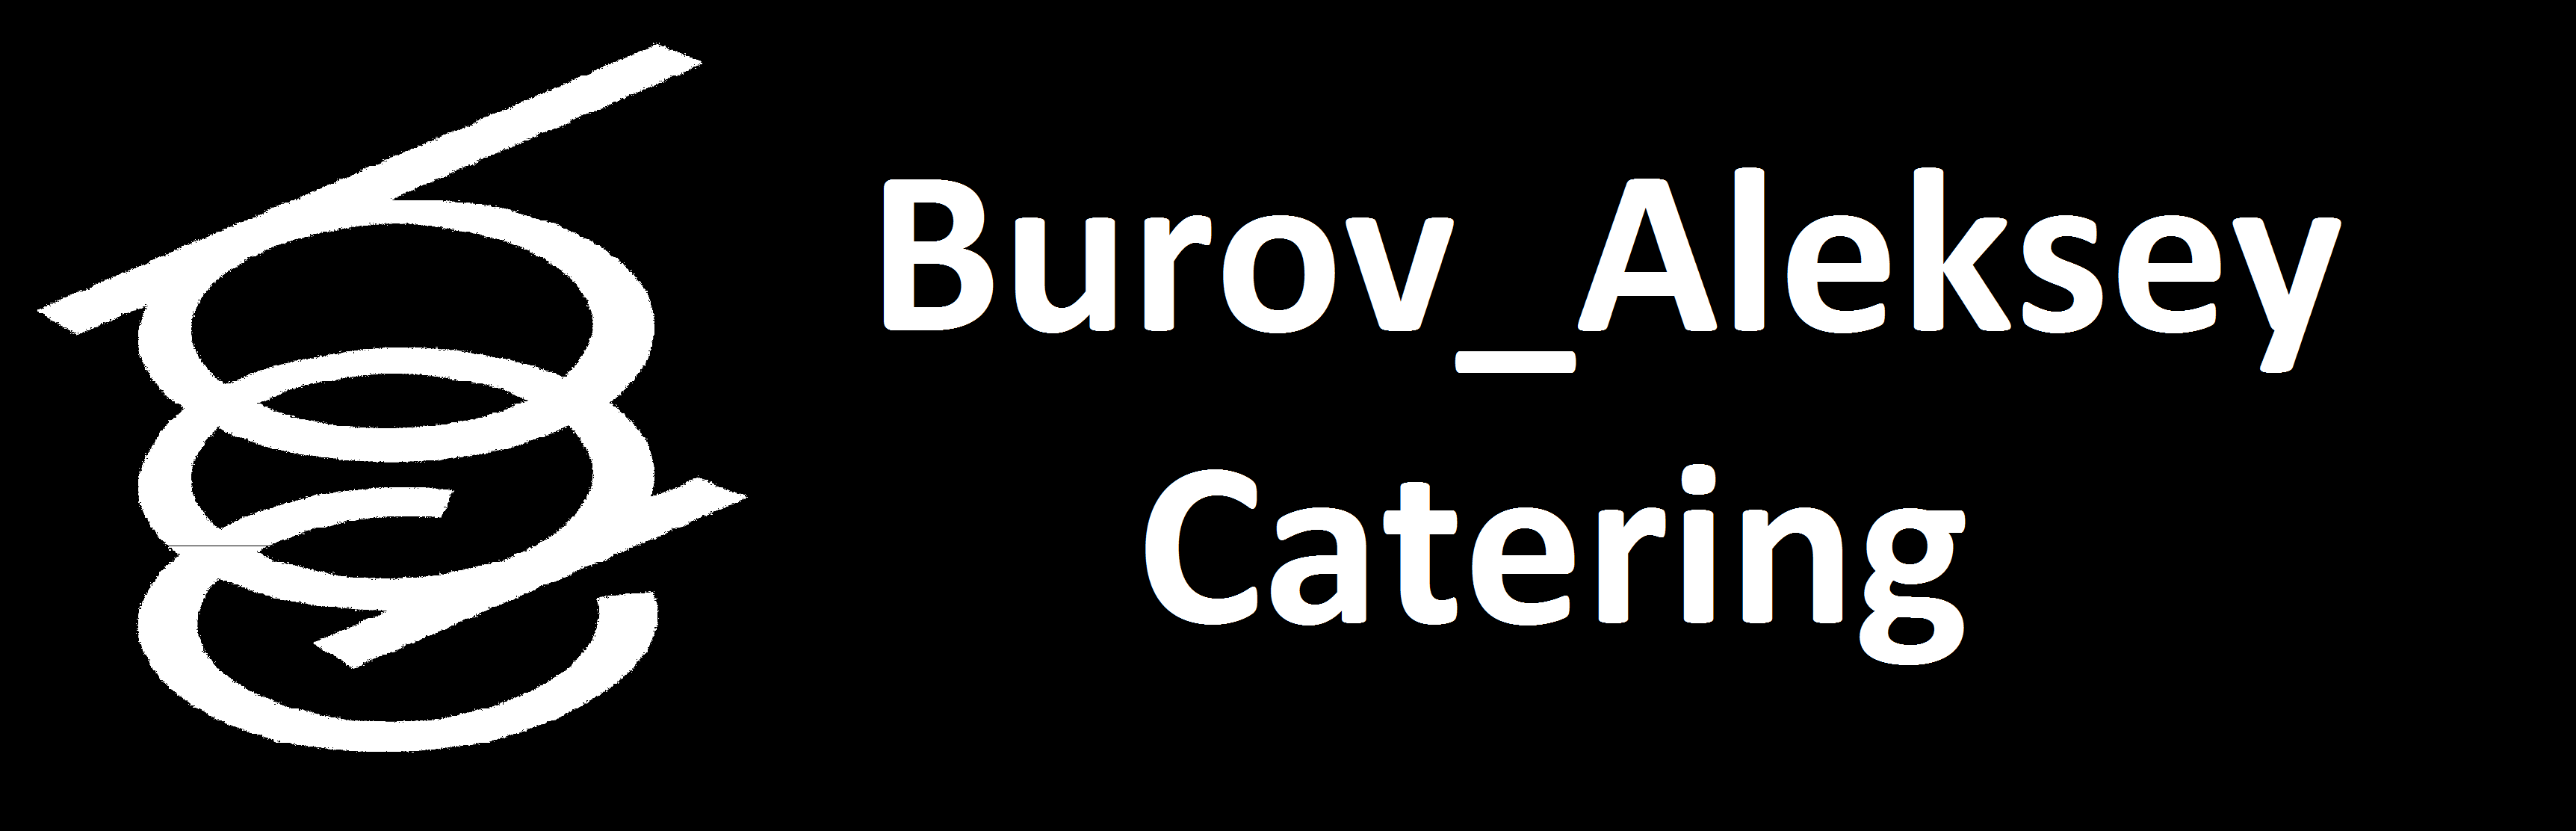 Burov_Aleksey_Catering